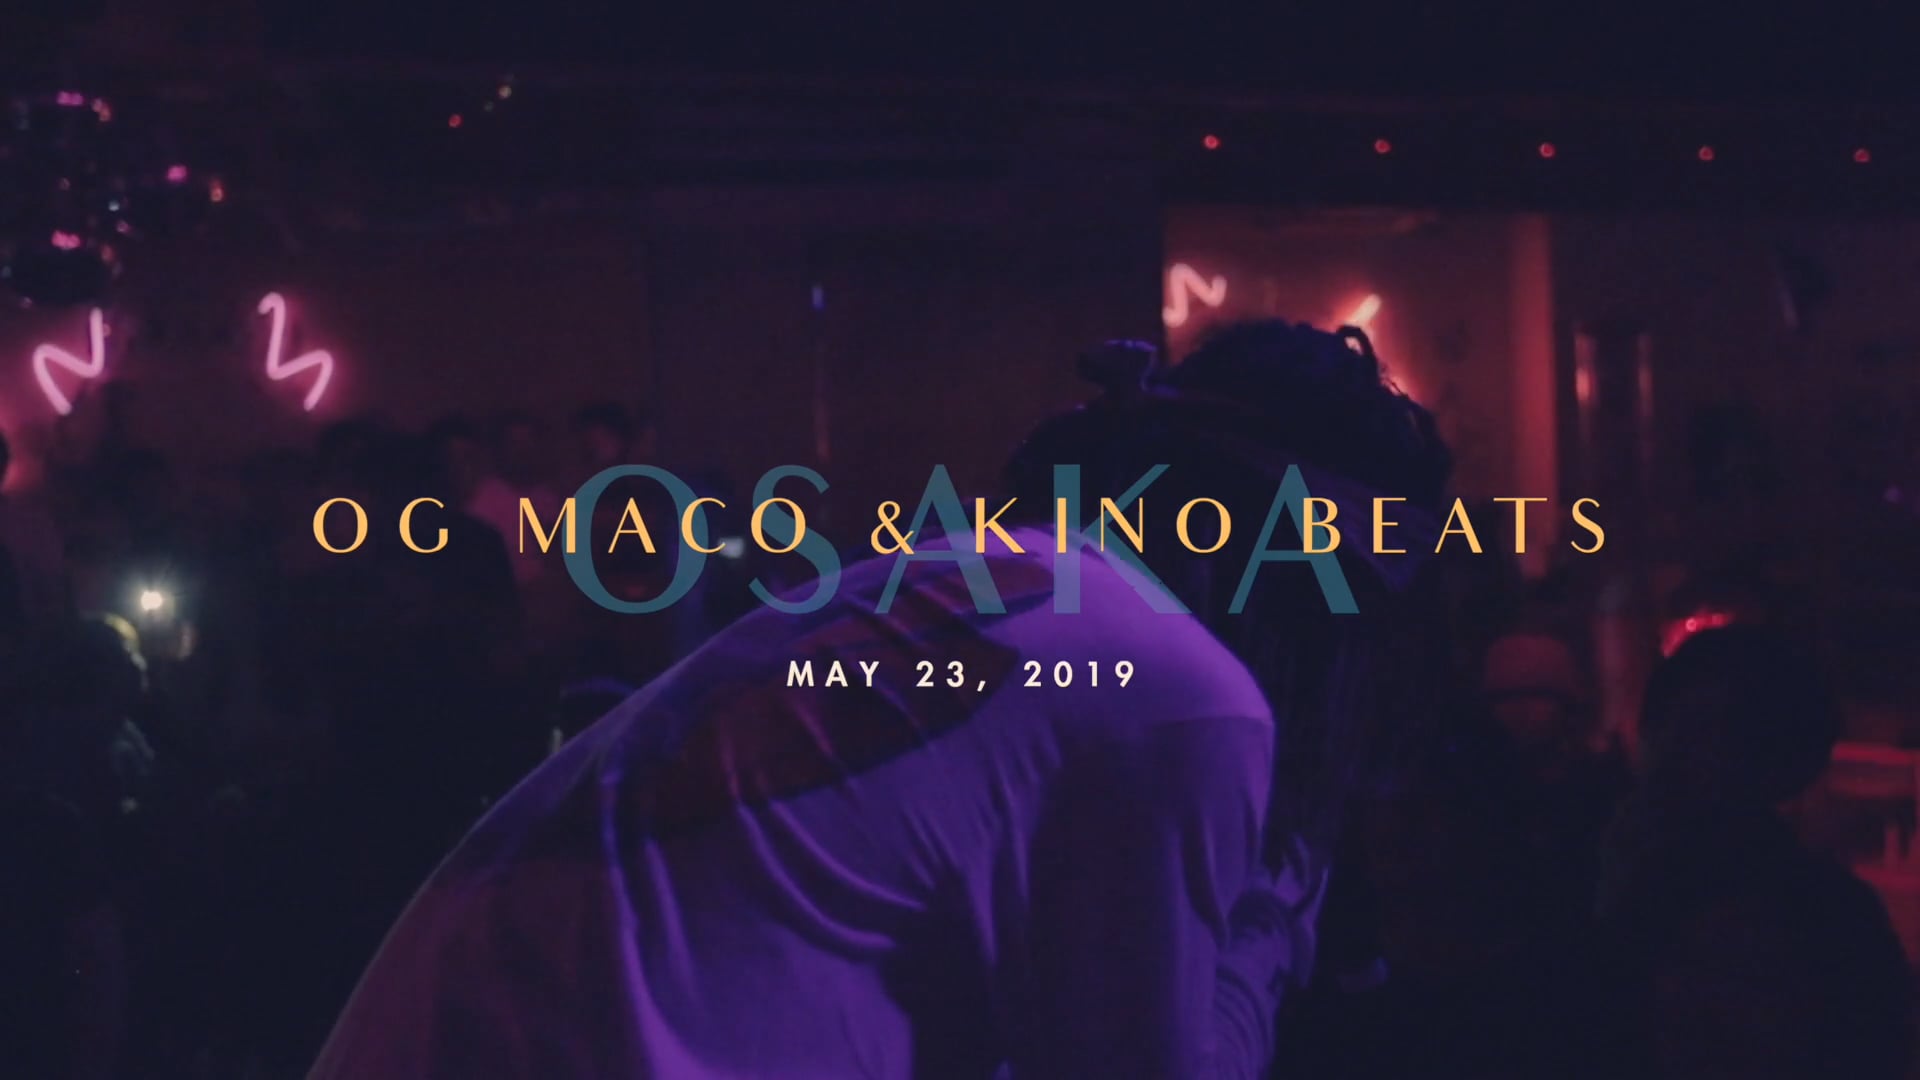 OGMACO & KINO BEATS Asia Tour in Osaka Recap Video Teaser [Trephic]